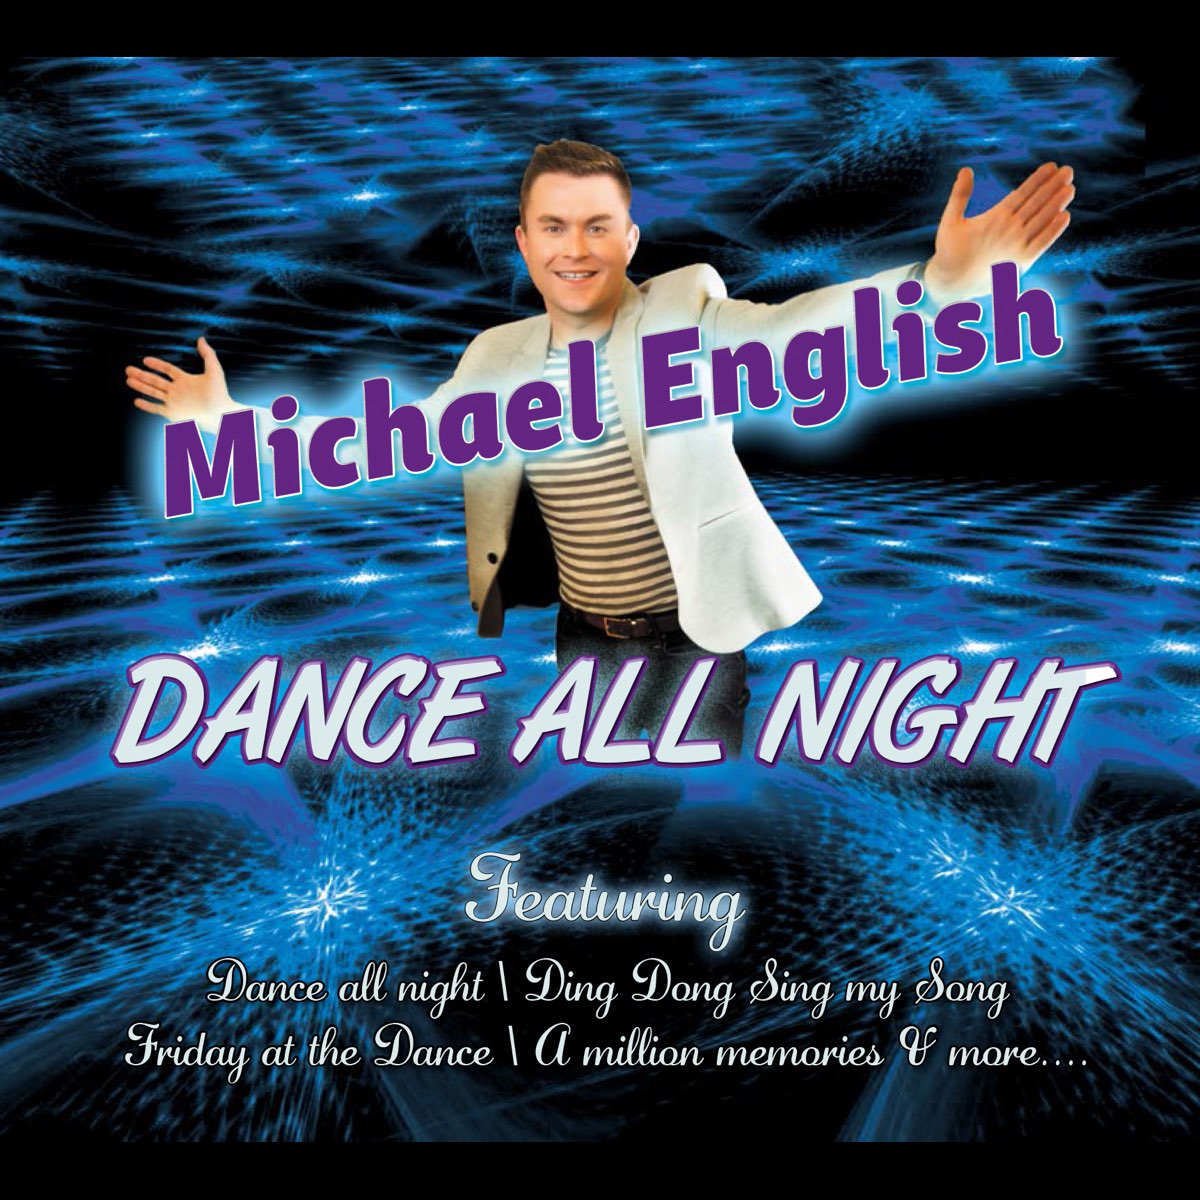 Михаэль на английском. Dance all Night фото. Послушать английские песни